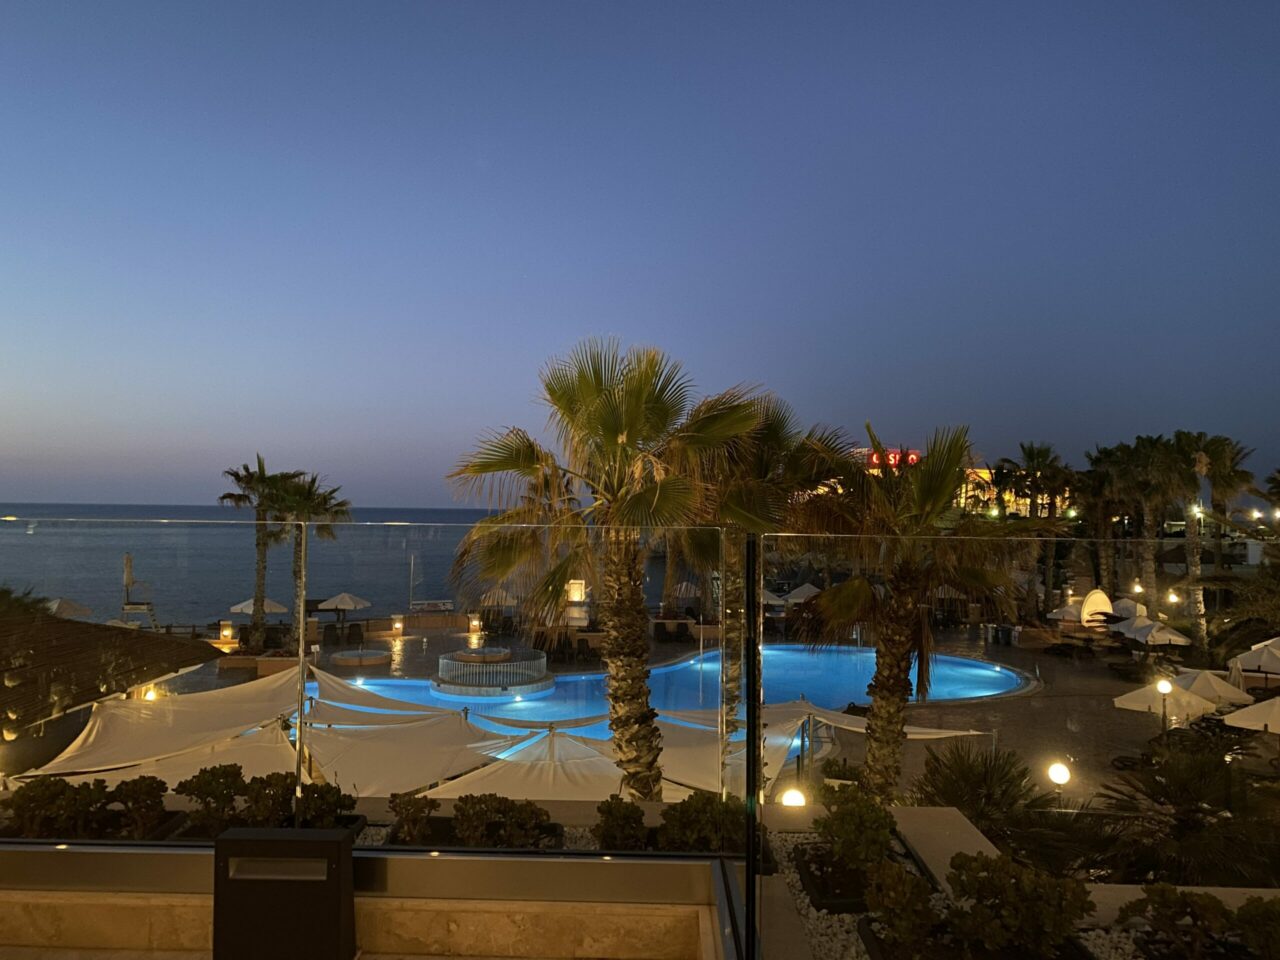 View at night at The Westin Dragonara Resort hotel 